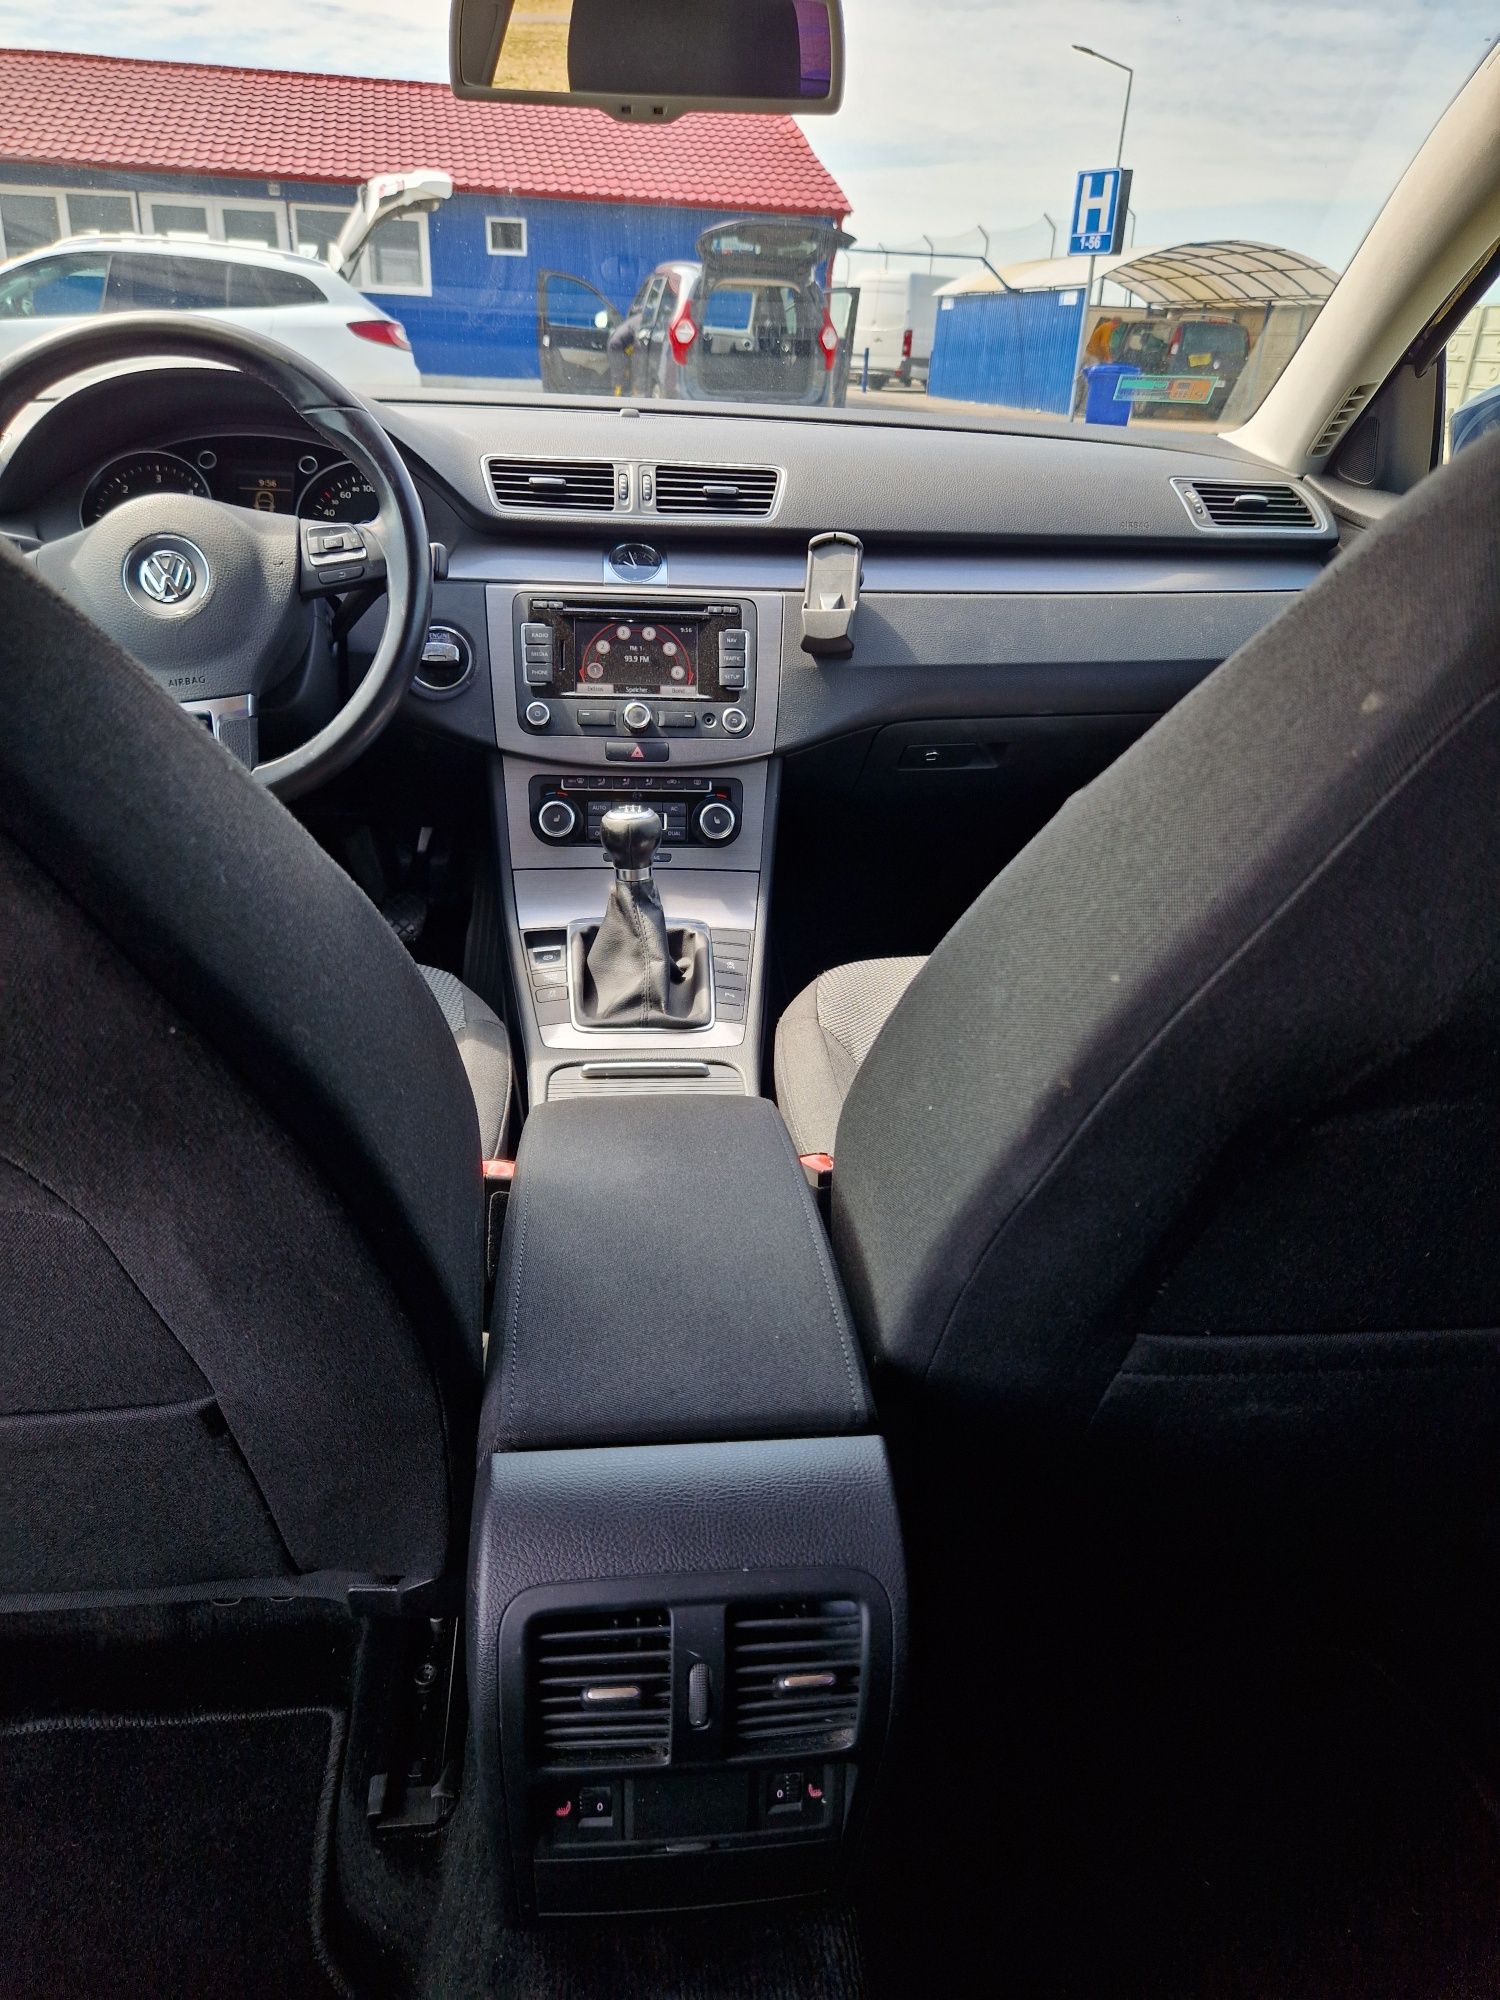 VW Passat 2.0 diesel 2012 euro5